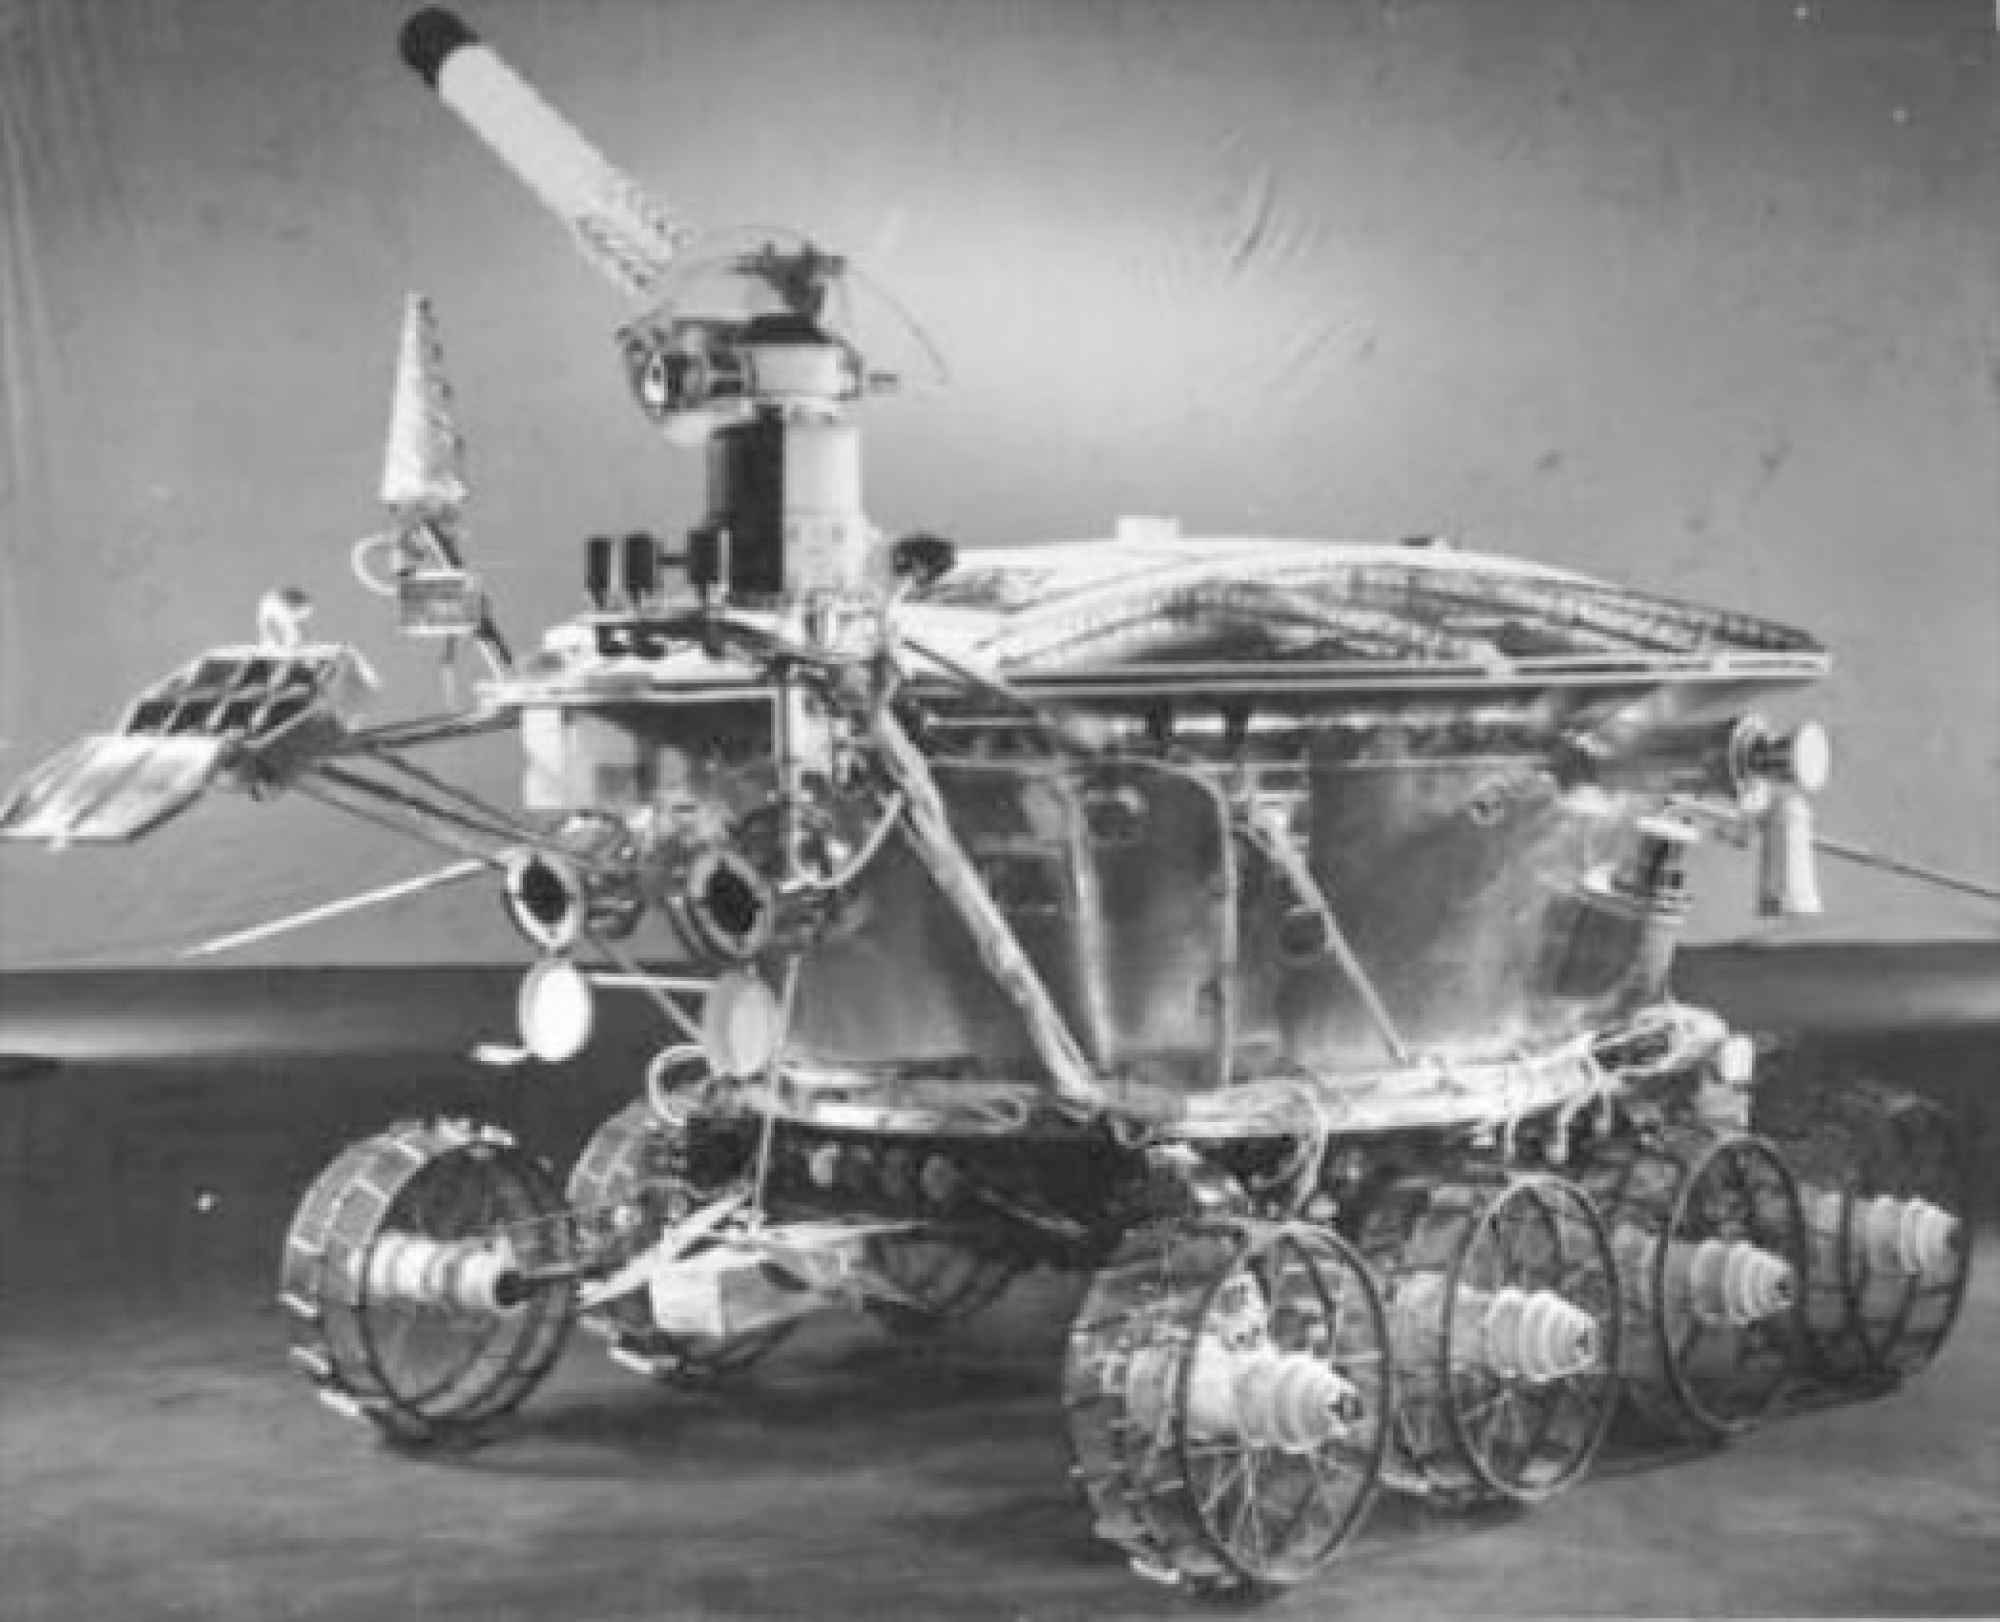 Lunokhod 1 ble den første bilen som kjørte rundt på månens overflate den 17.november 1971. Selv om den var fjernstyrt, skal ingen ta fra russerne den prestasjonen